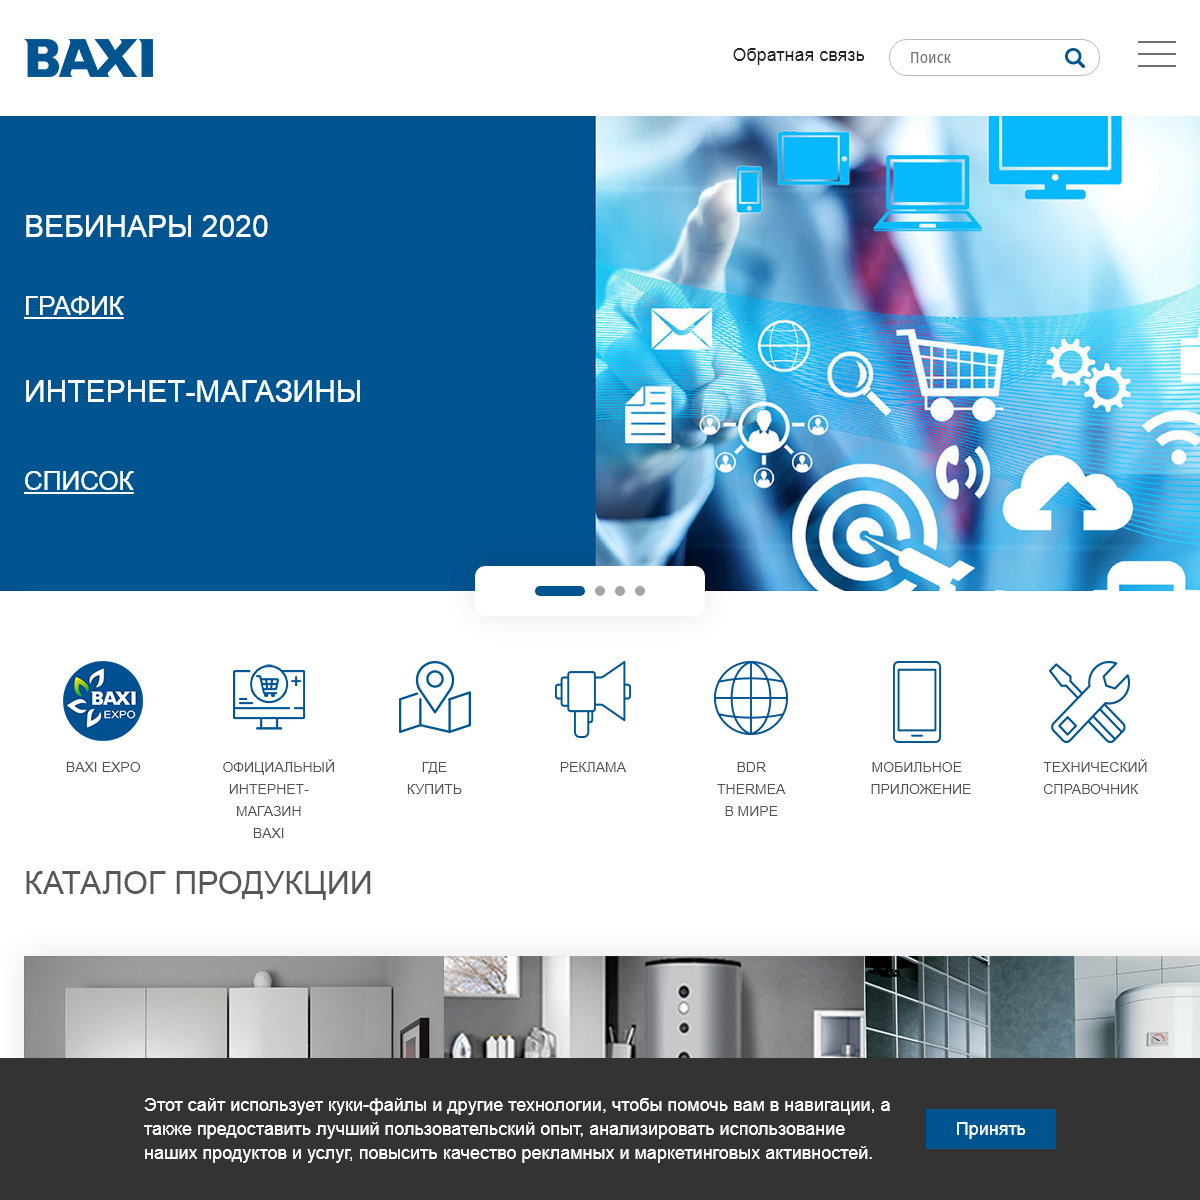 A complete backup of baxi.ru